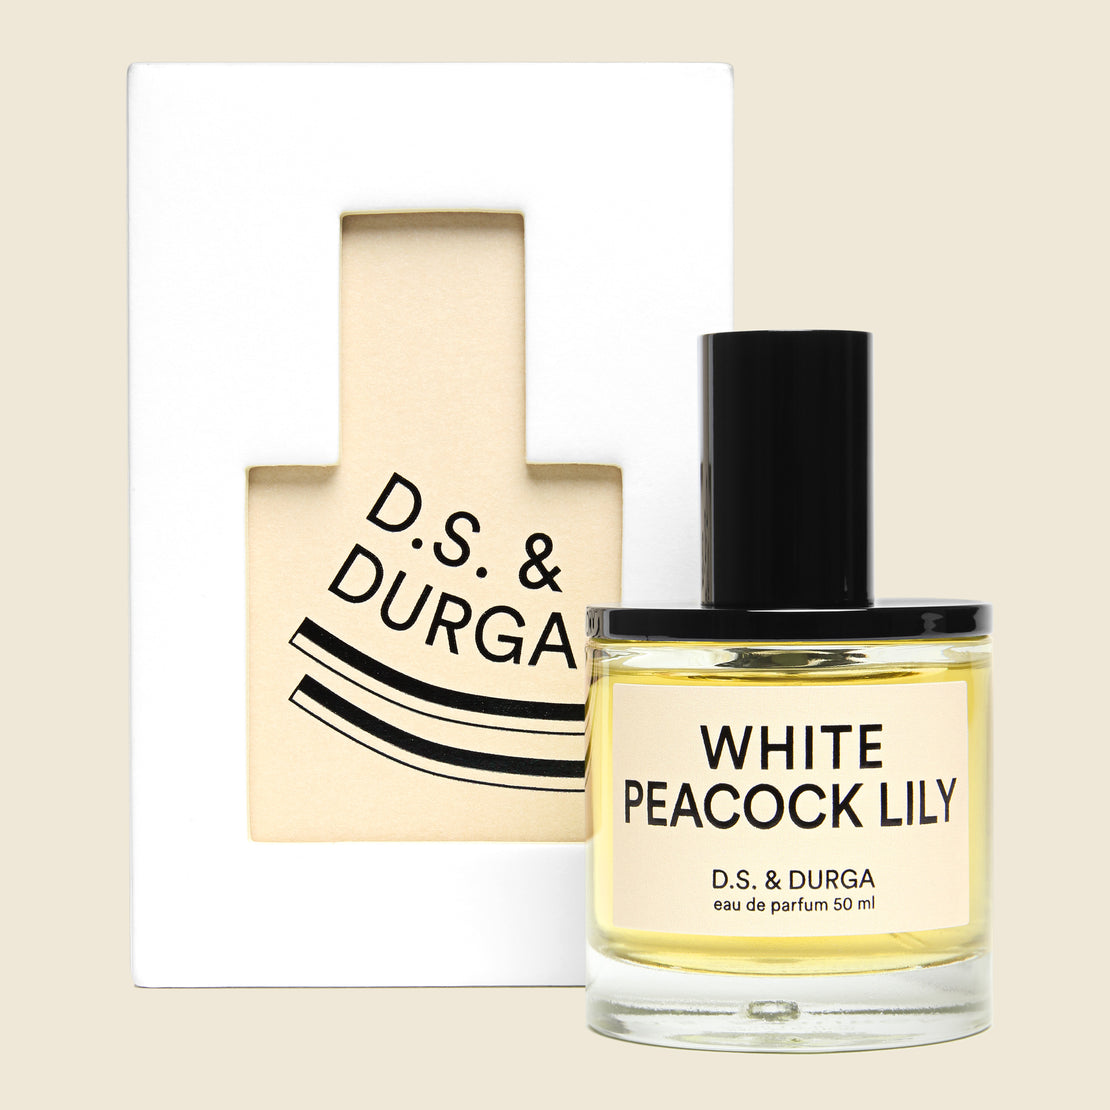 D.S. & Durga Perfume - White Peacock Lily